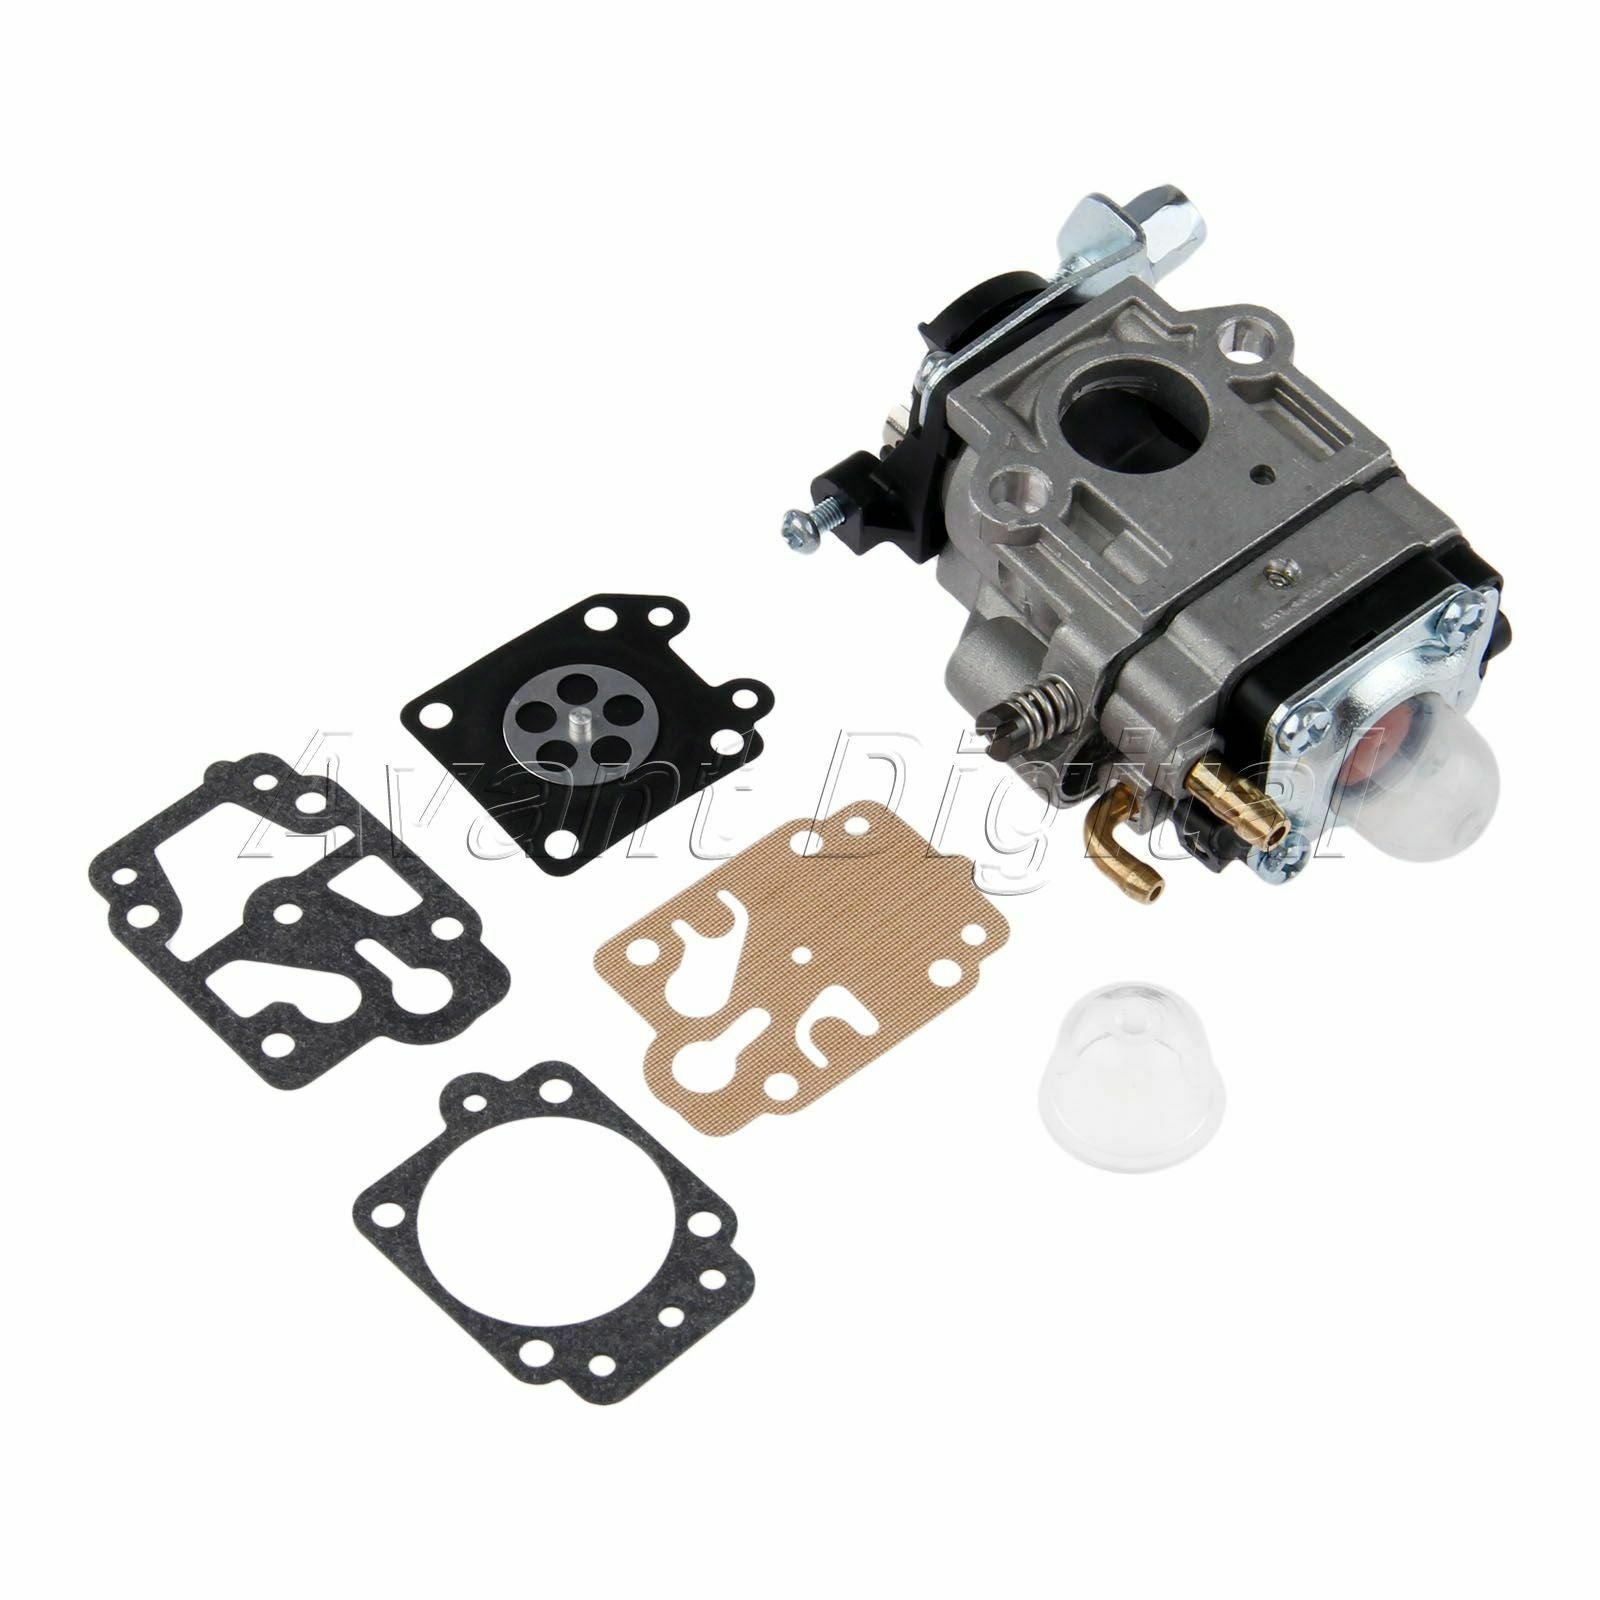 1 Set Carburetor Repair Kits for CG430 CG520 BC430 BC520 Brush Cutter Trimmer